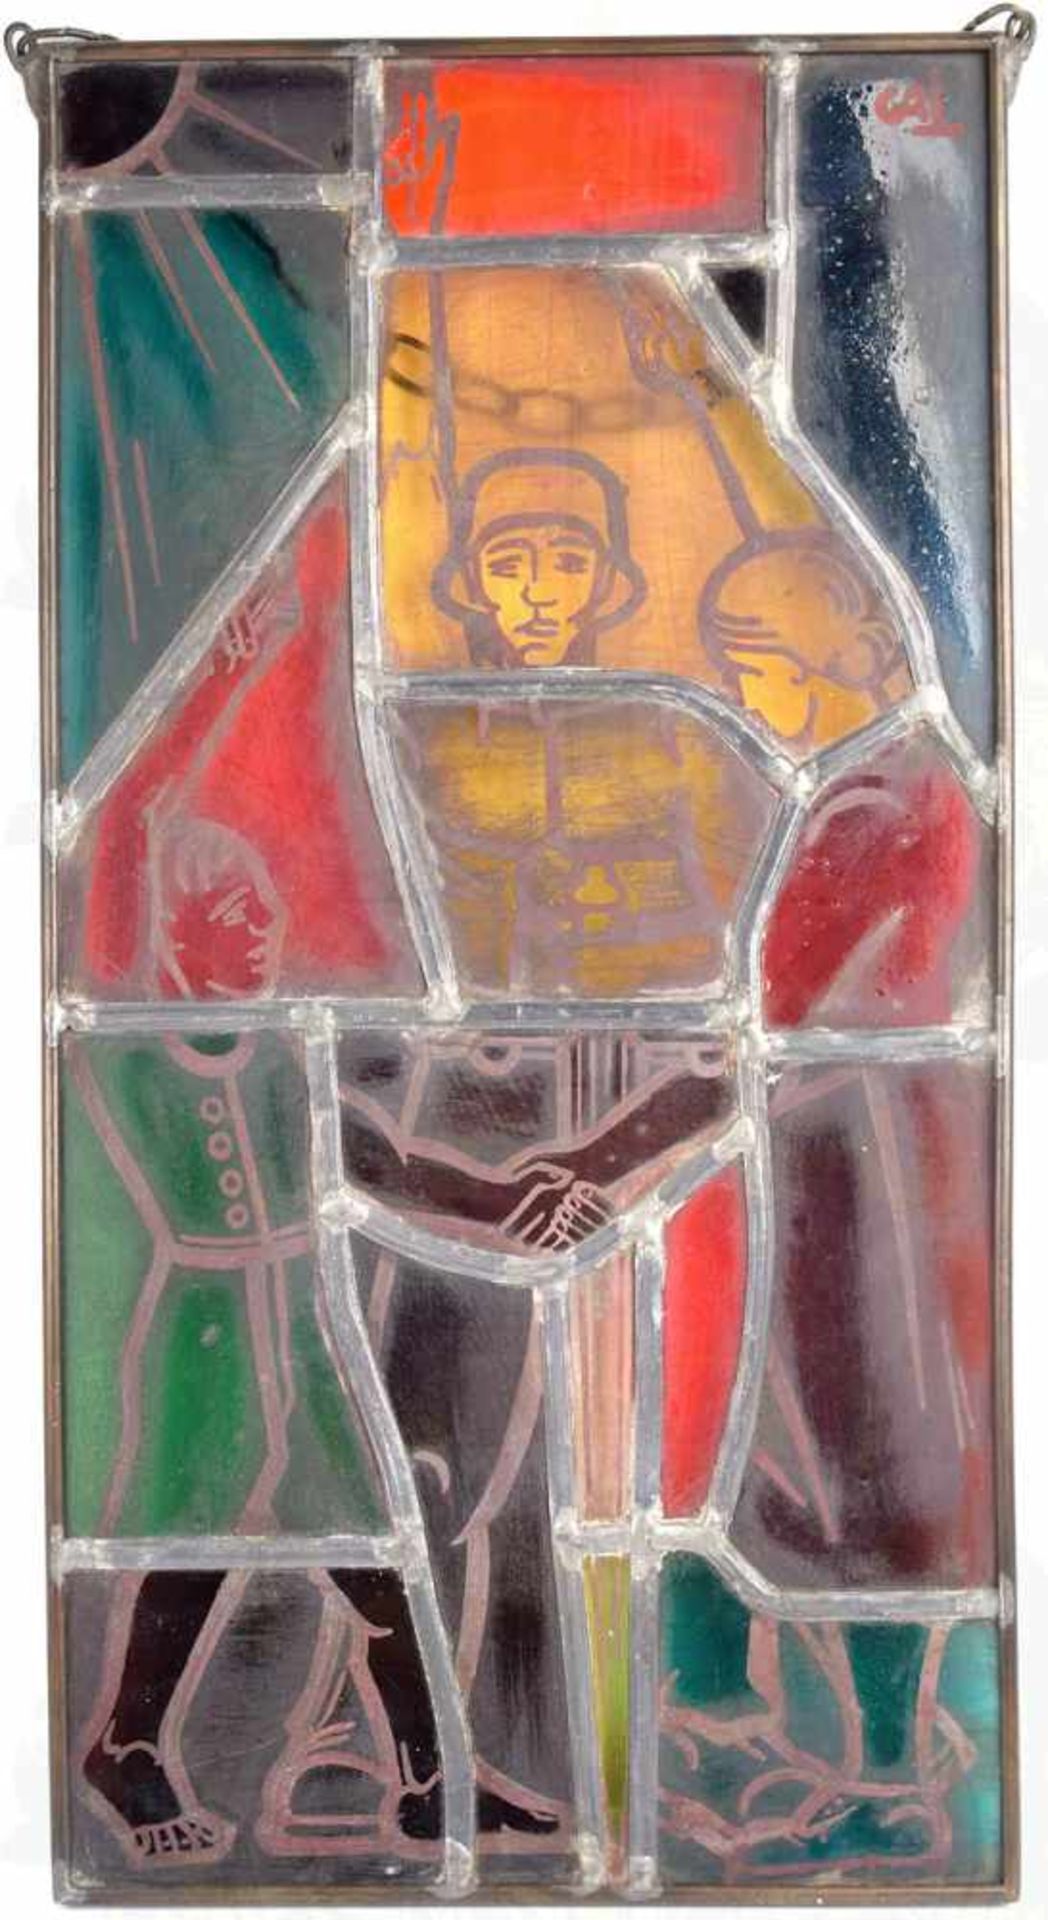 ERINNERUNGS-GLASBILD, mehrfarb. Bleiverglasung, Darstellung eines Soldaten mit freiem Oberkörper - Bild 2 aus 2